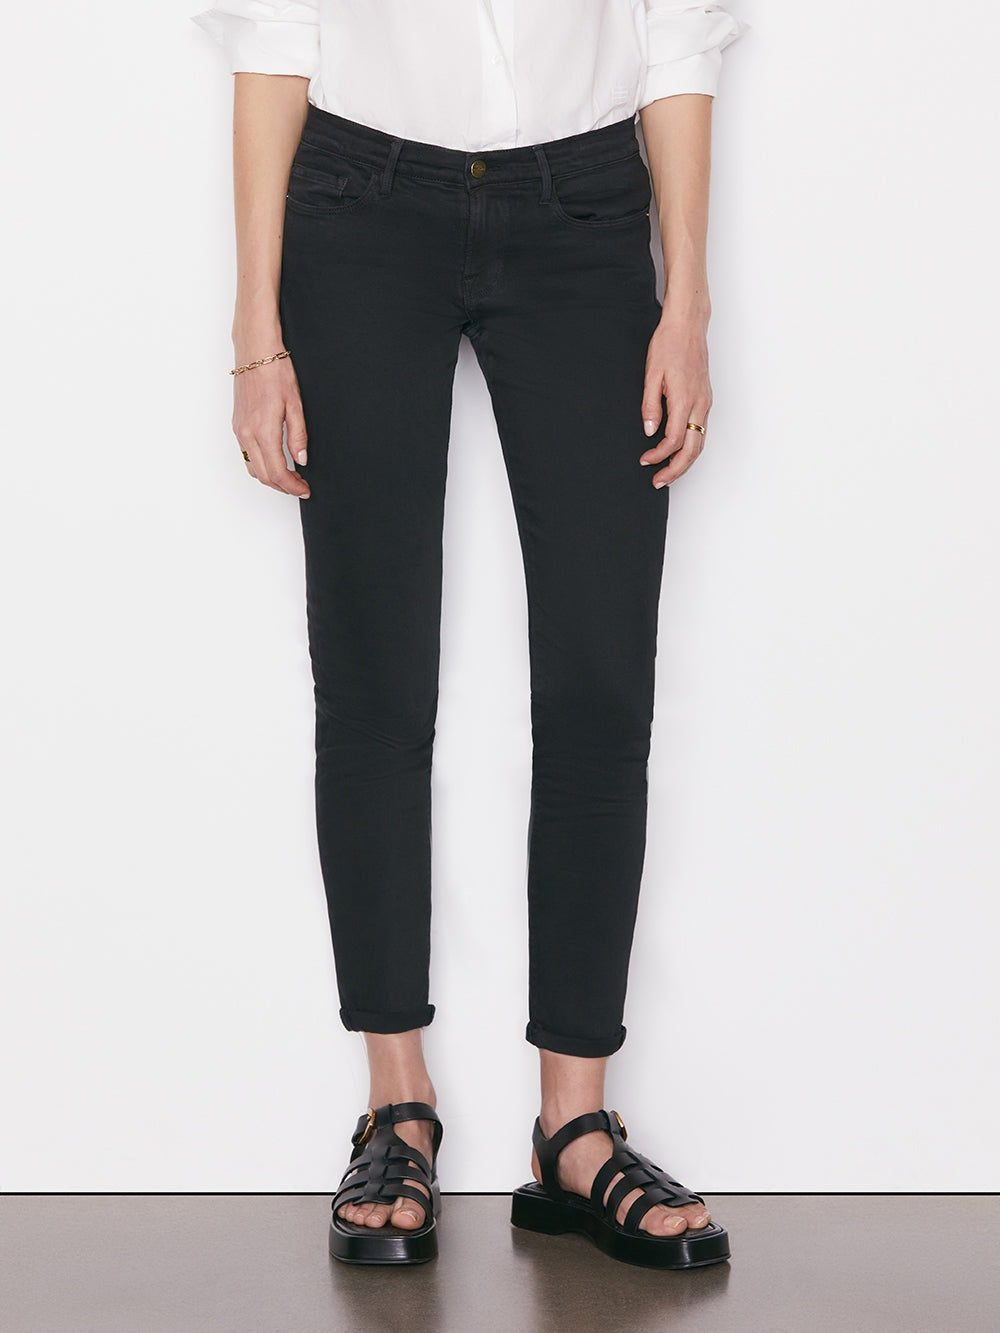 Le Garcon jeans, black